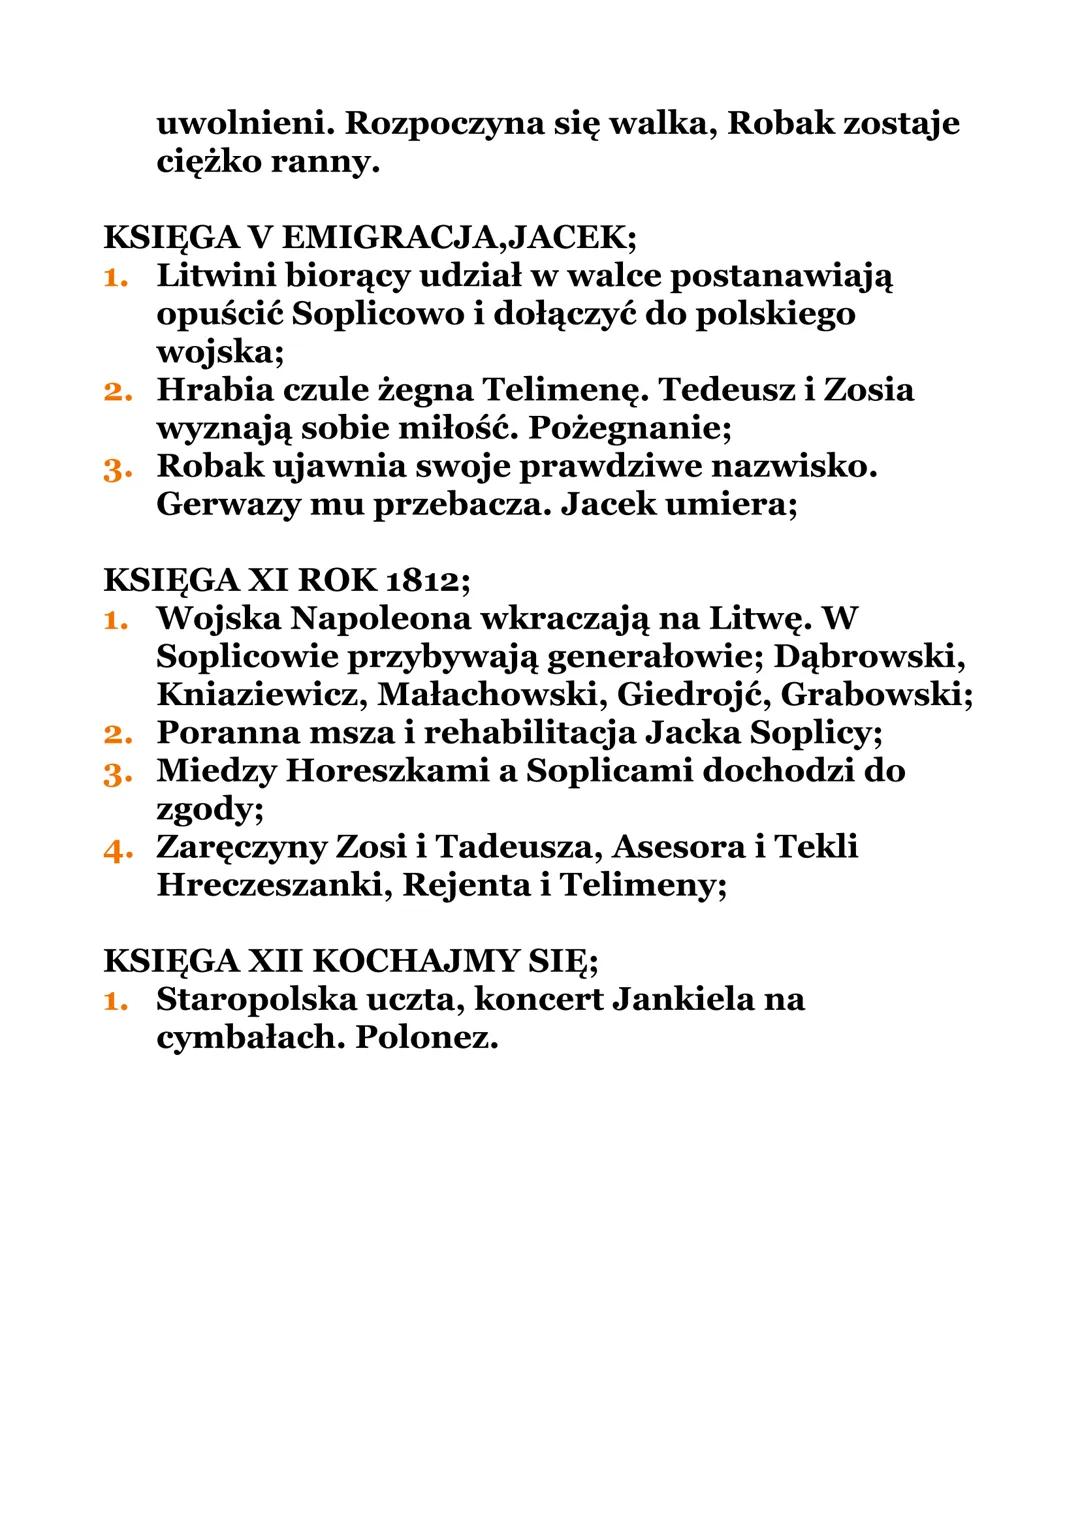 PAN TADEUSZ"
ADAM MICKIEWICZ
*CZAS I MIEJSCE AKCJI;
Akcja ,,Pana Tadeusza” rozgrywa się na Litwie w
Soplicowie oraz w Dobrzynia.
Rozpoczyna 